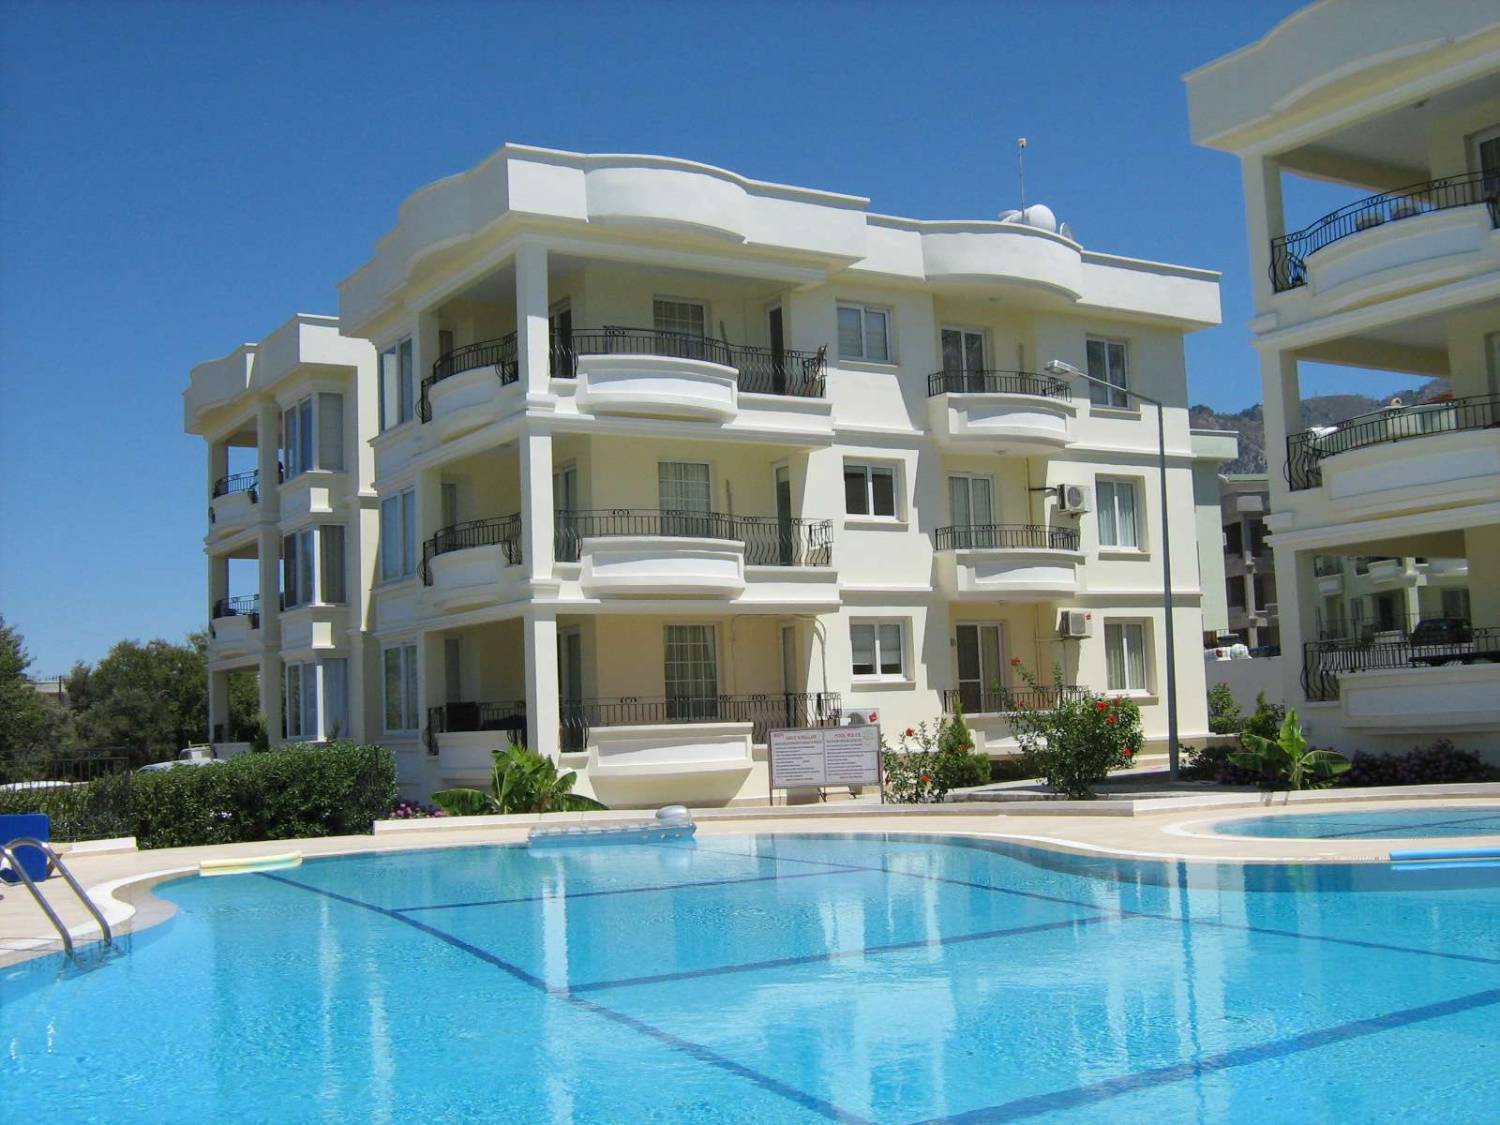 Стоимость недвижимости на Кипре растет, несмотря на мировой кризис